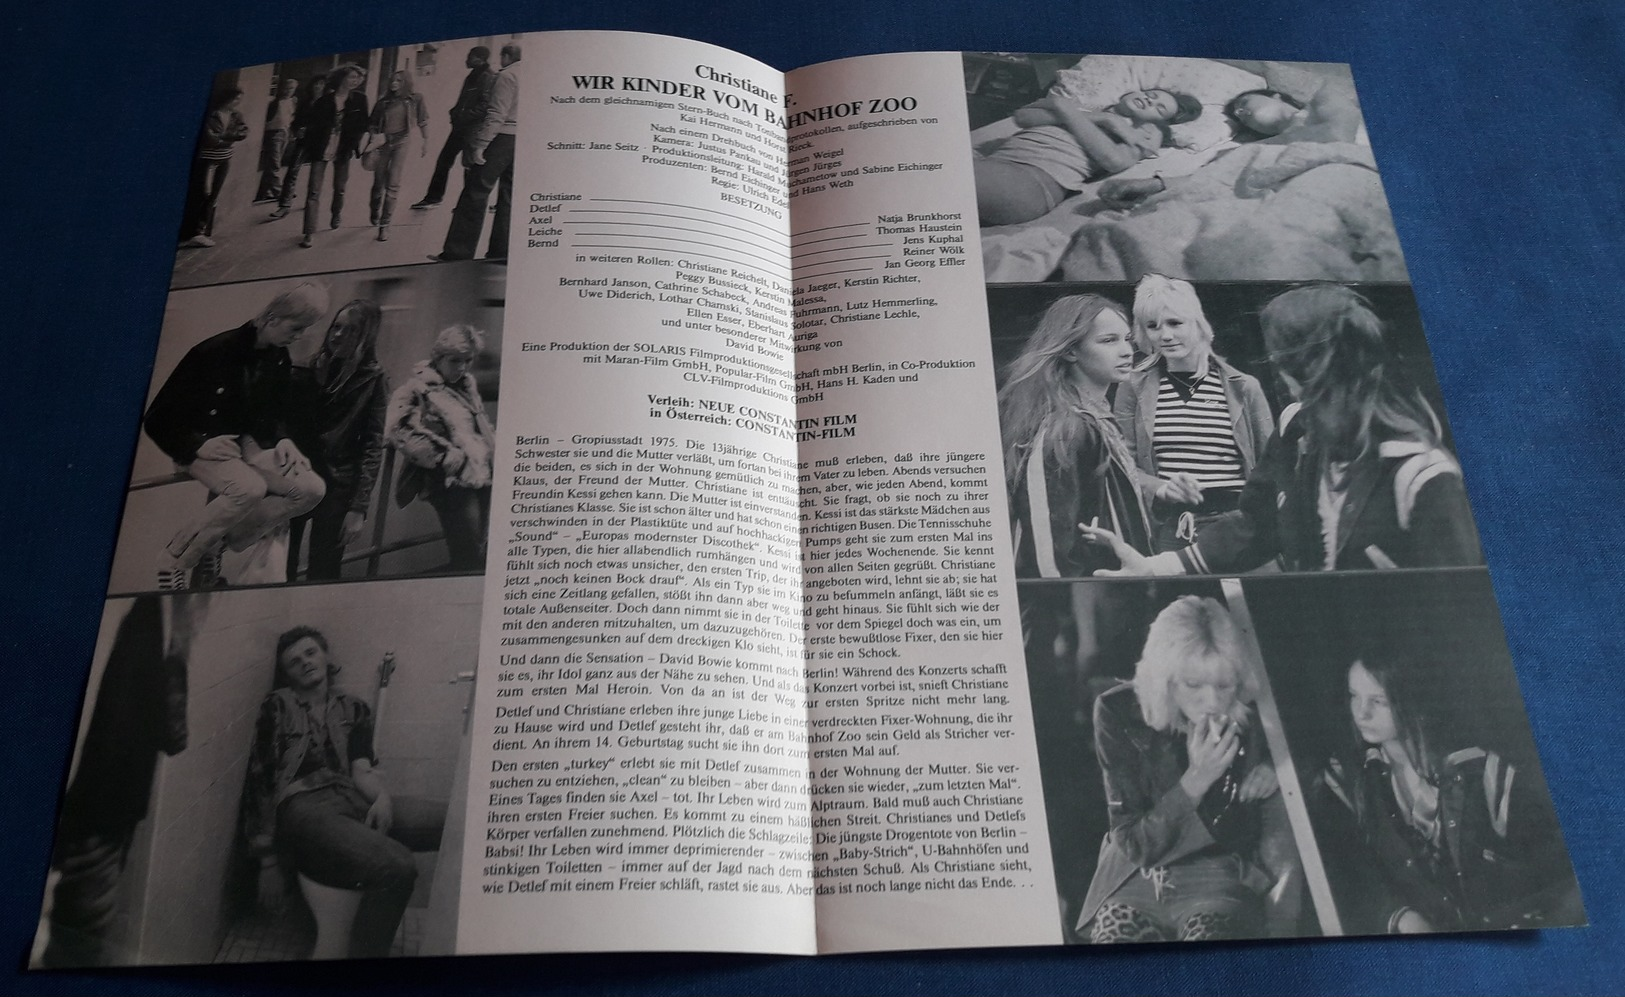 Natja Brunkhorst, Thomas Haustein > "Christiane  F. - Wir Kinder Vom Bahnhof Zoo" > Altes NFP-Filmprogramm '1981 (fp112) - Magazines